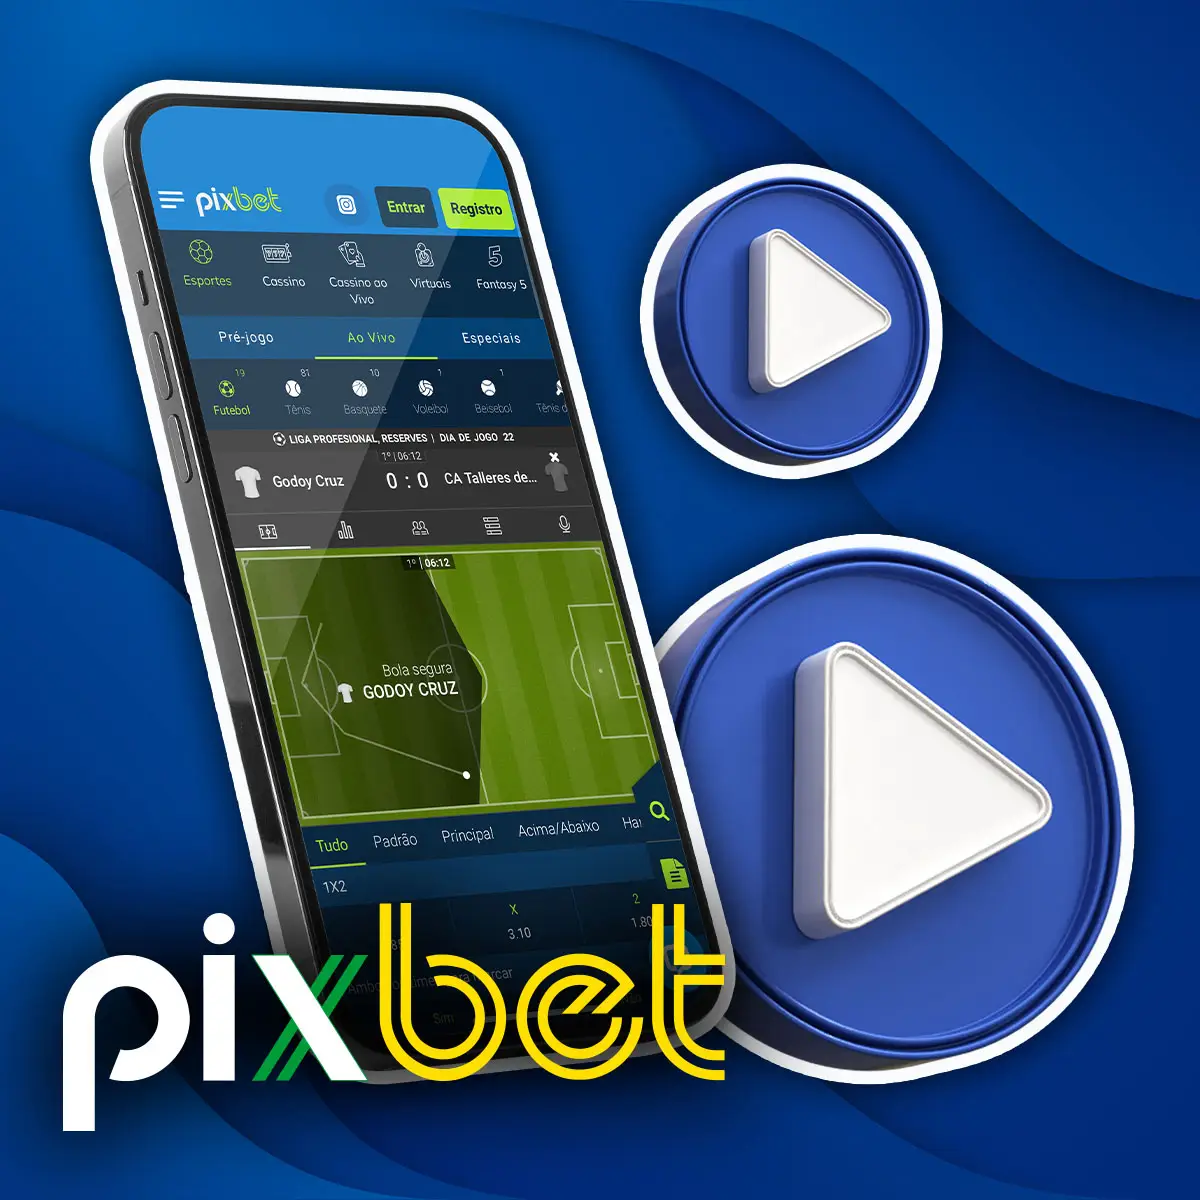 Transmissões ao vivo Pixbet App